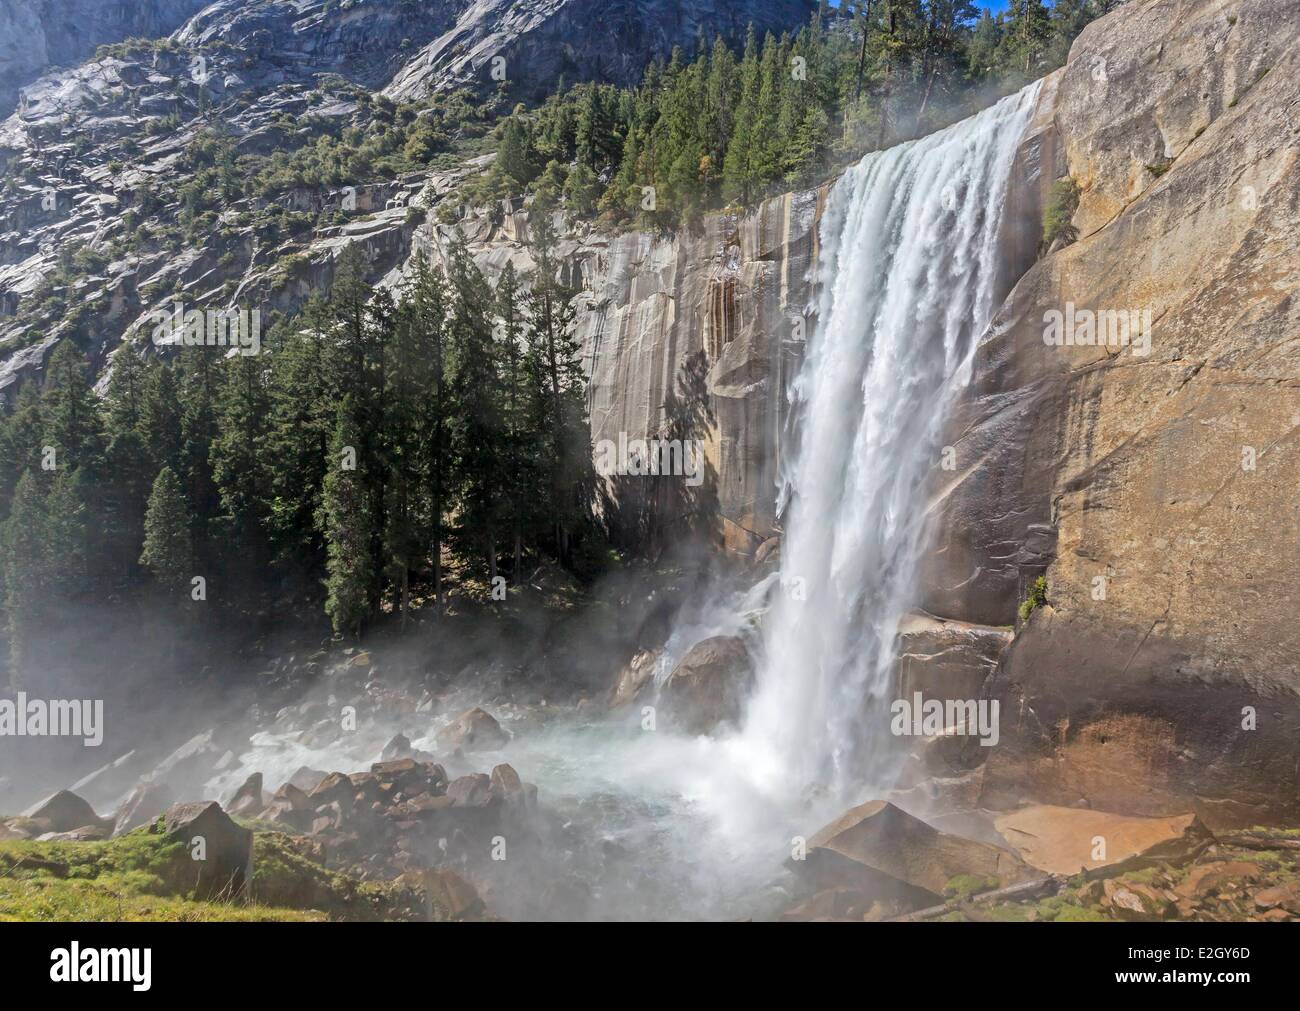 Stati Uniti California Sierra Nevada Parco Nazionale Yosemite elencati come patrimonio mondiale dall' UNESCO Yosemite Valley primaverile caduta sul fiume Merced e Mist Trail Foto Stock